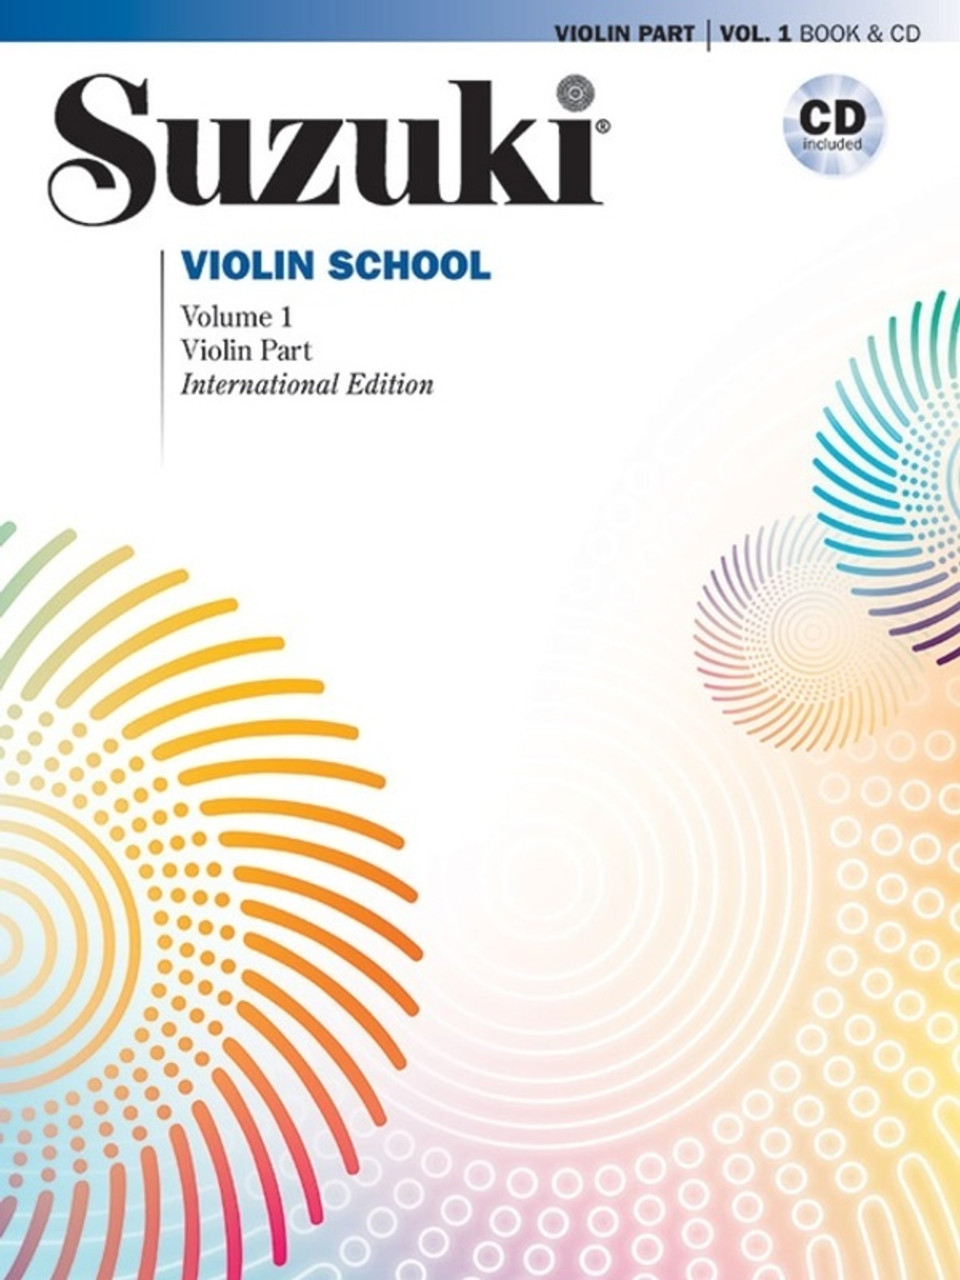 Suzuki Violin School Vol. 1 Violin Part & CD